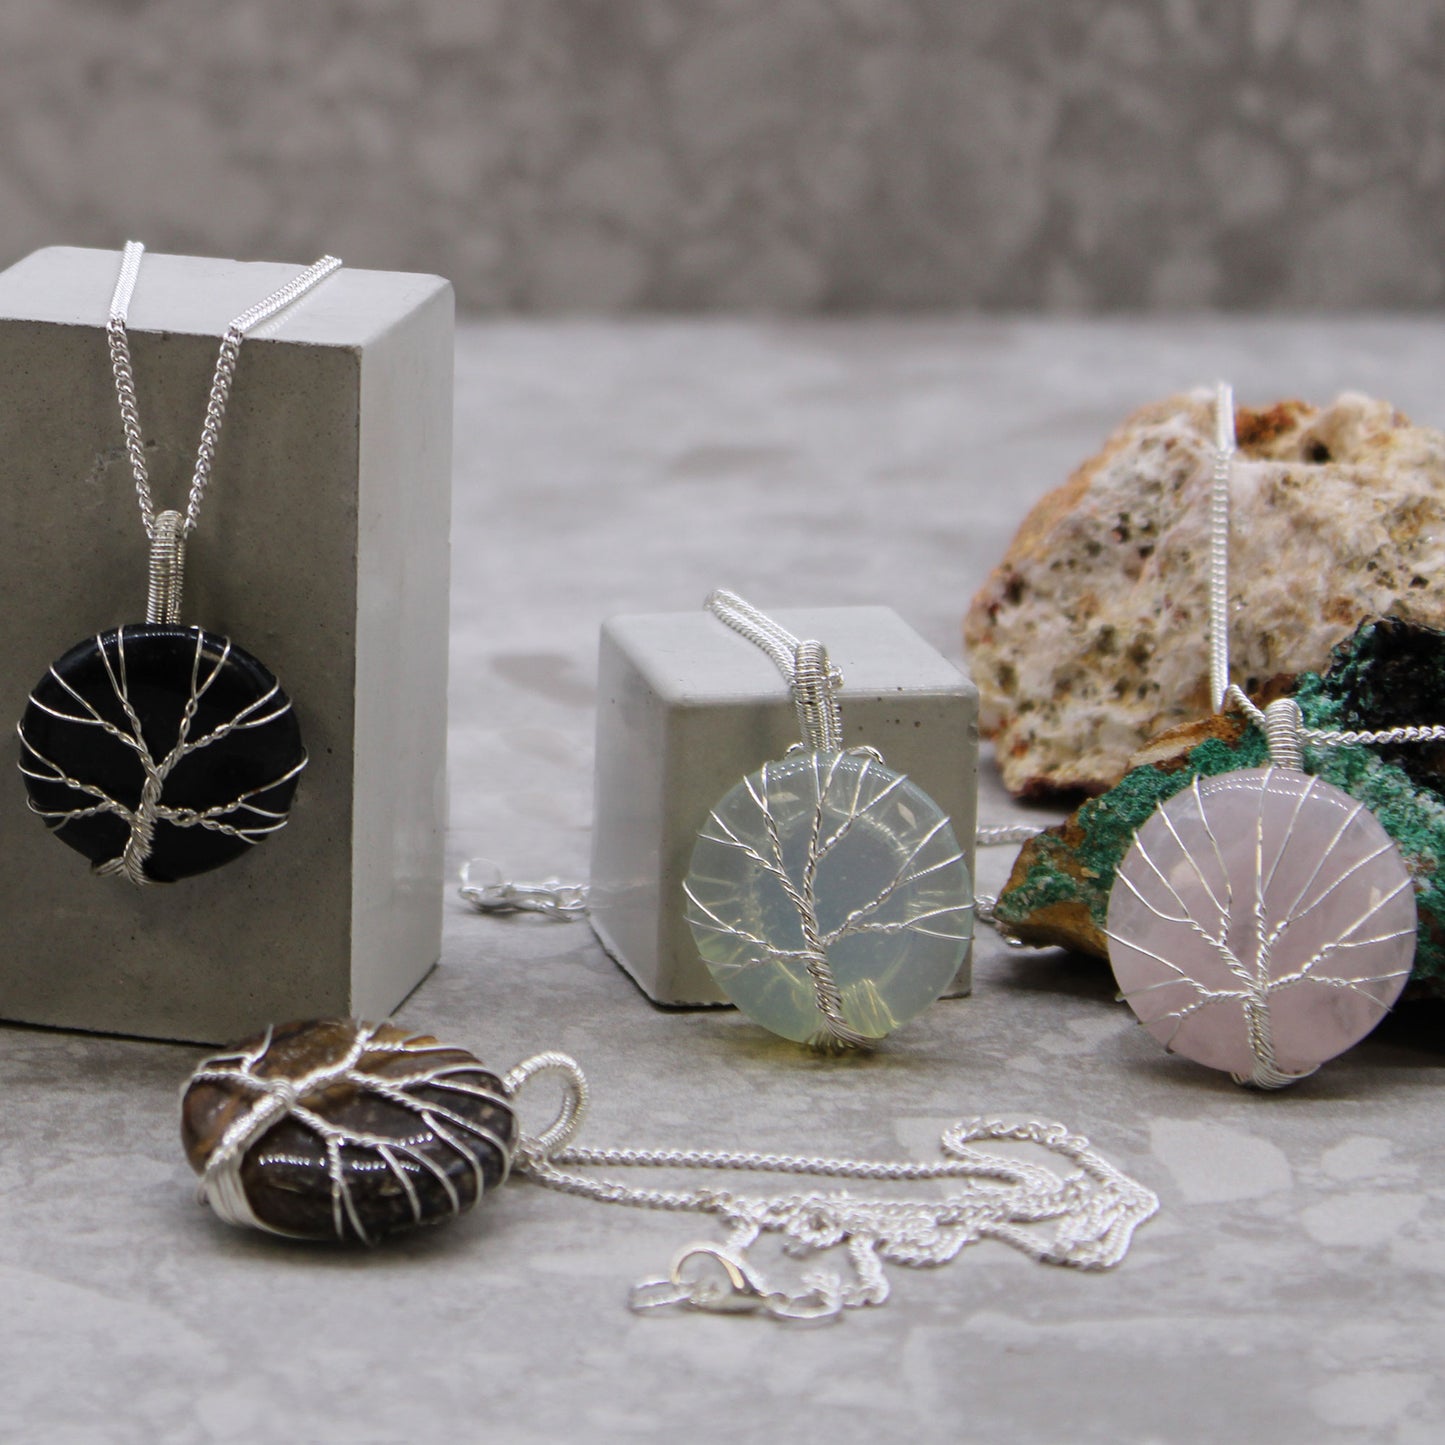 Gemstone Necklace - Tree of Life  (Black Onyx)